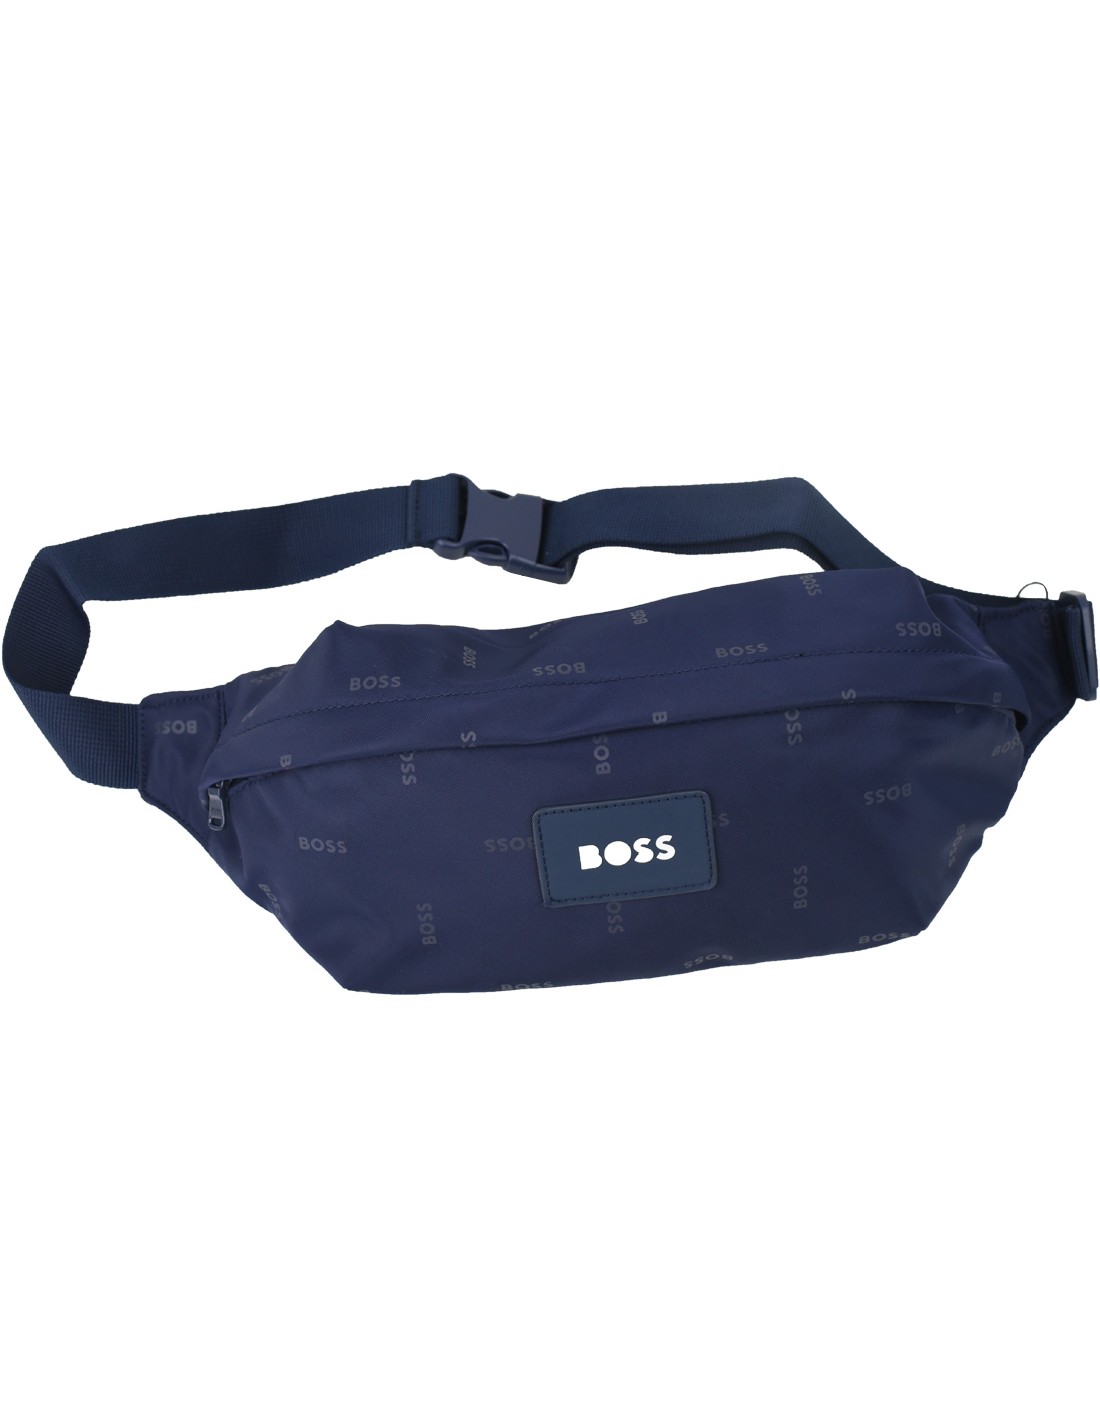 Update more than 130 boss waist bag best - esthdonghoadian